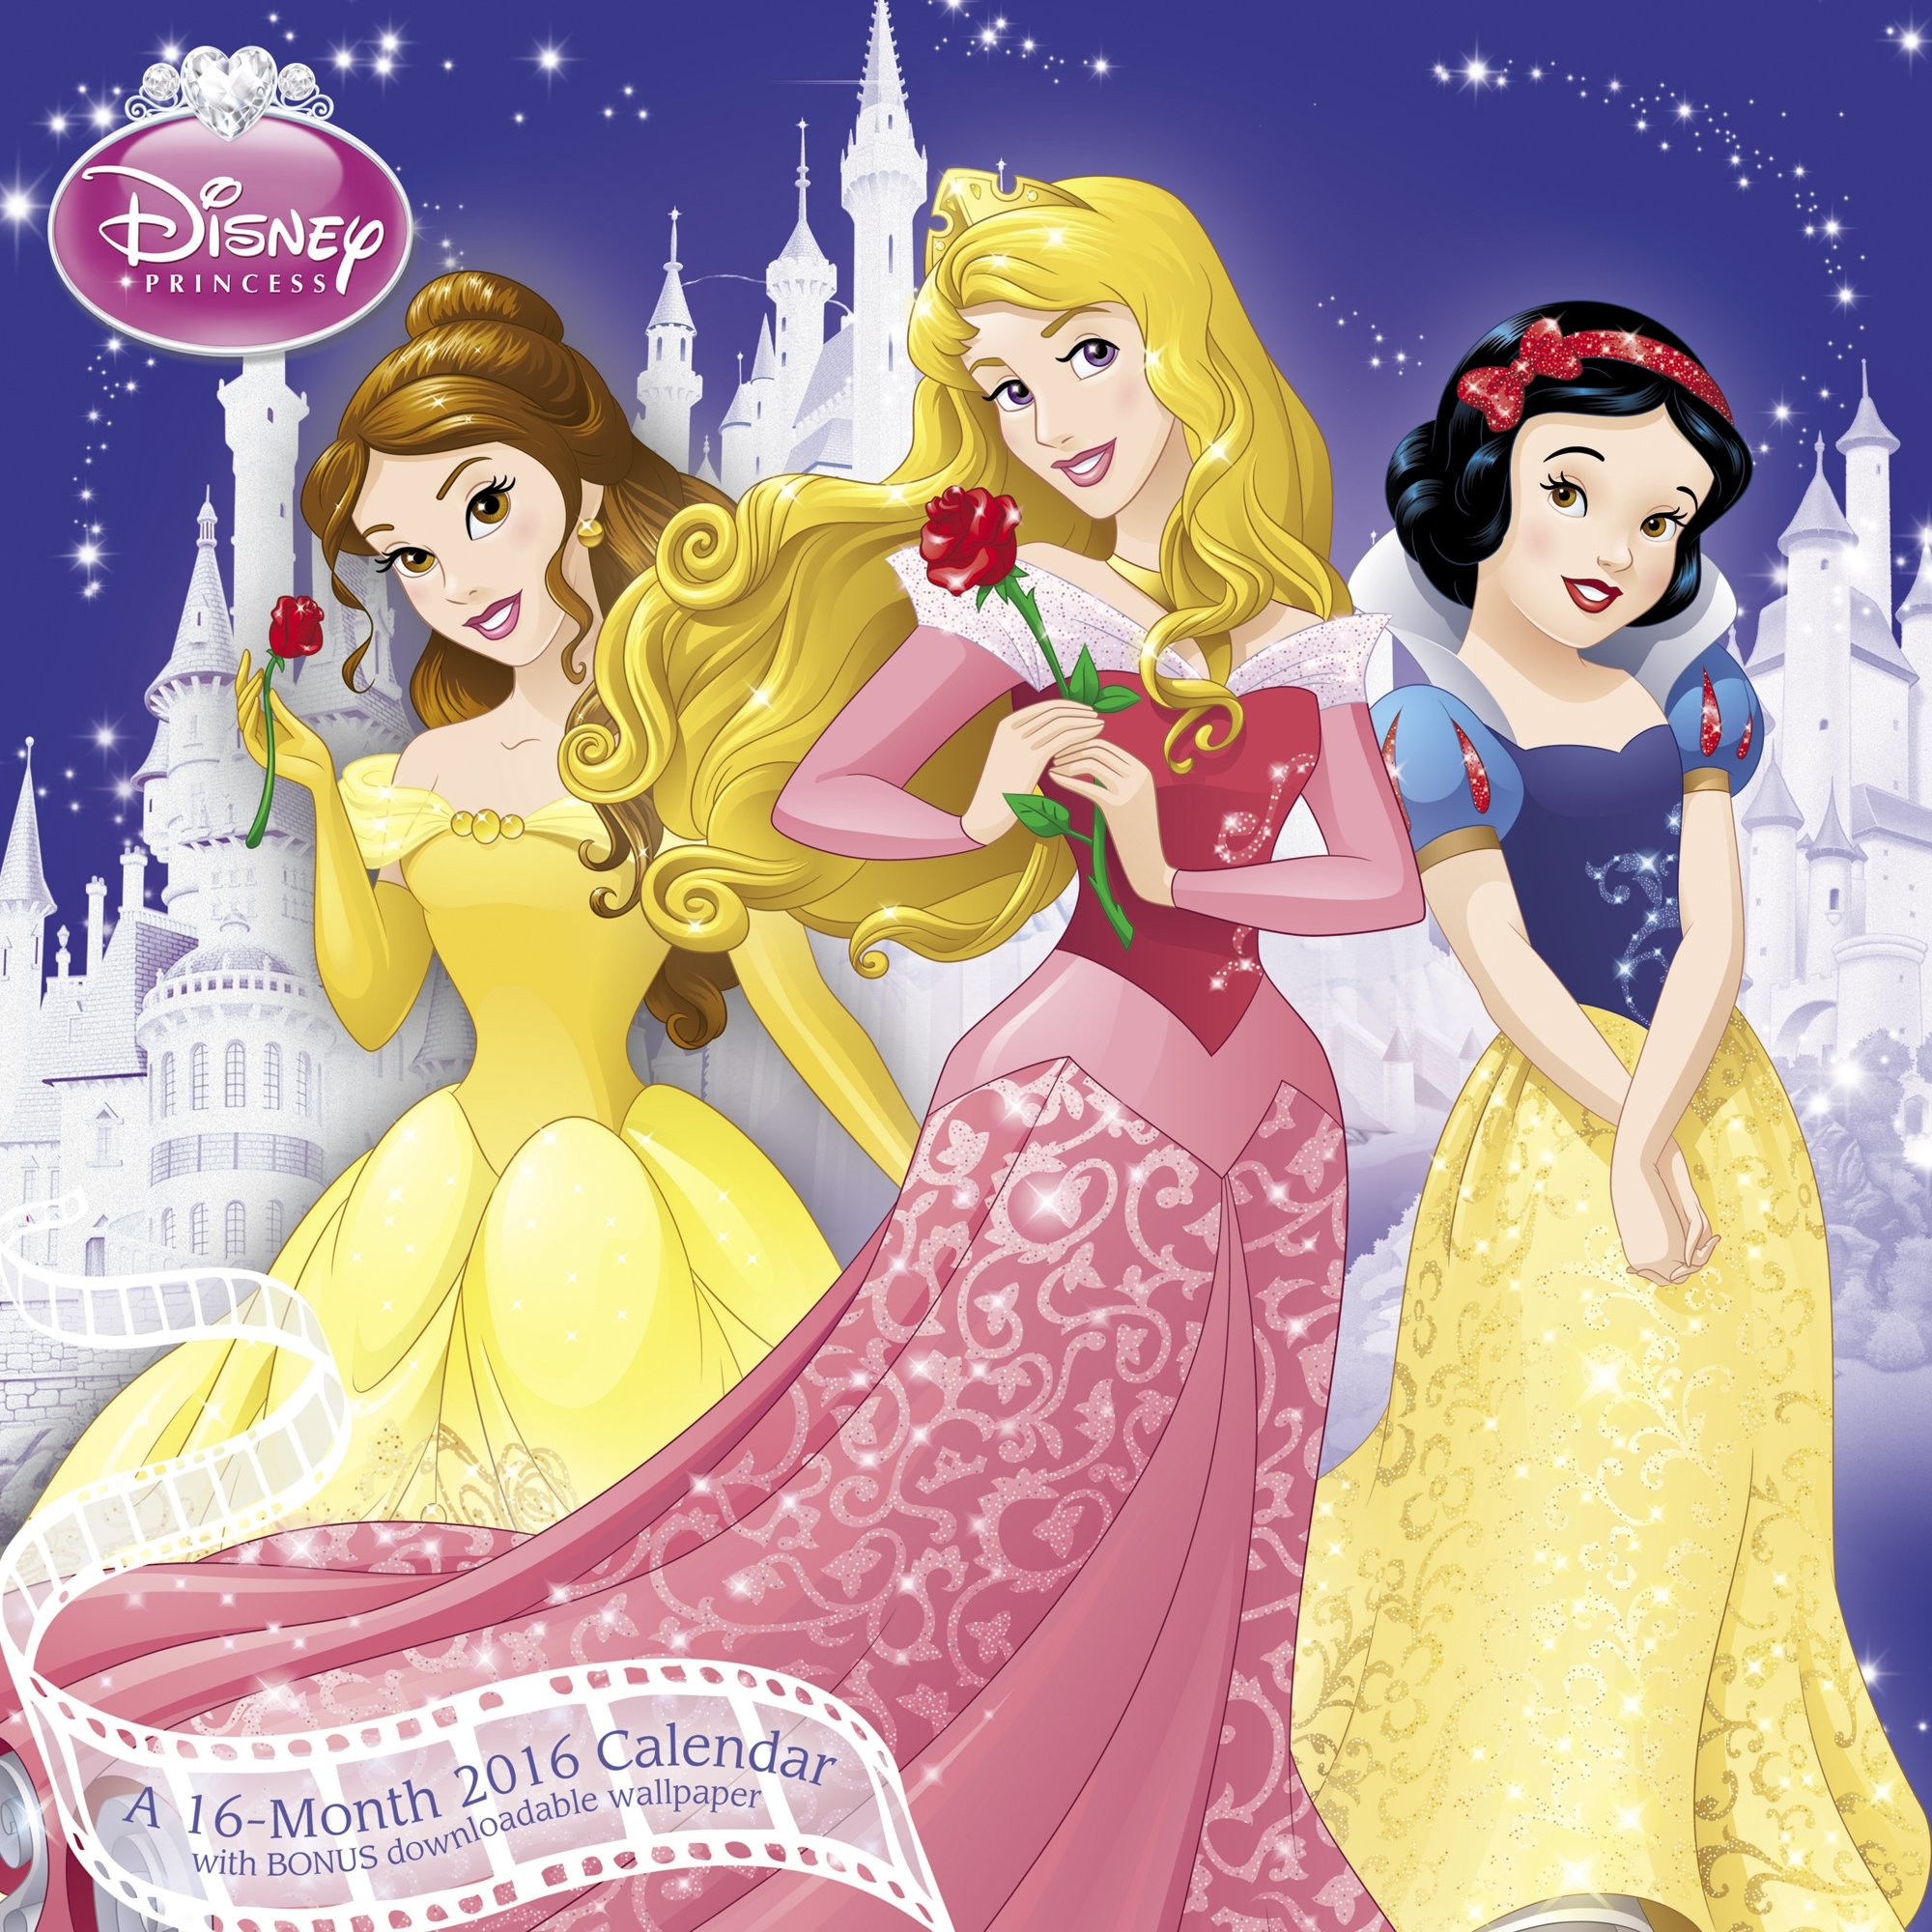 Disney Princess Wall Calendar 2016 Mead 0038576364769 Amazon.com Books